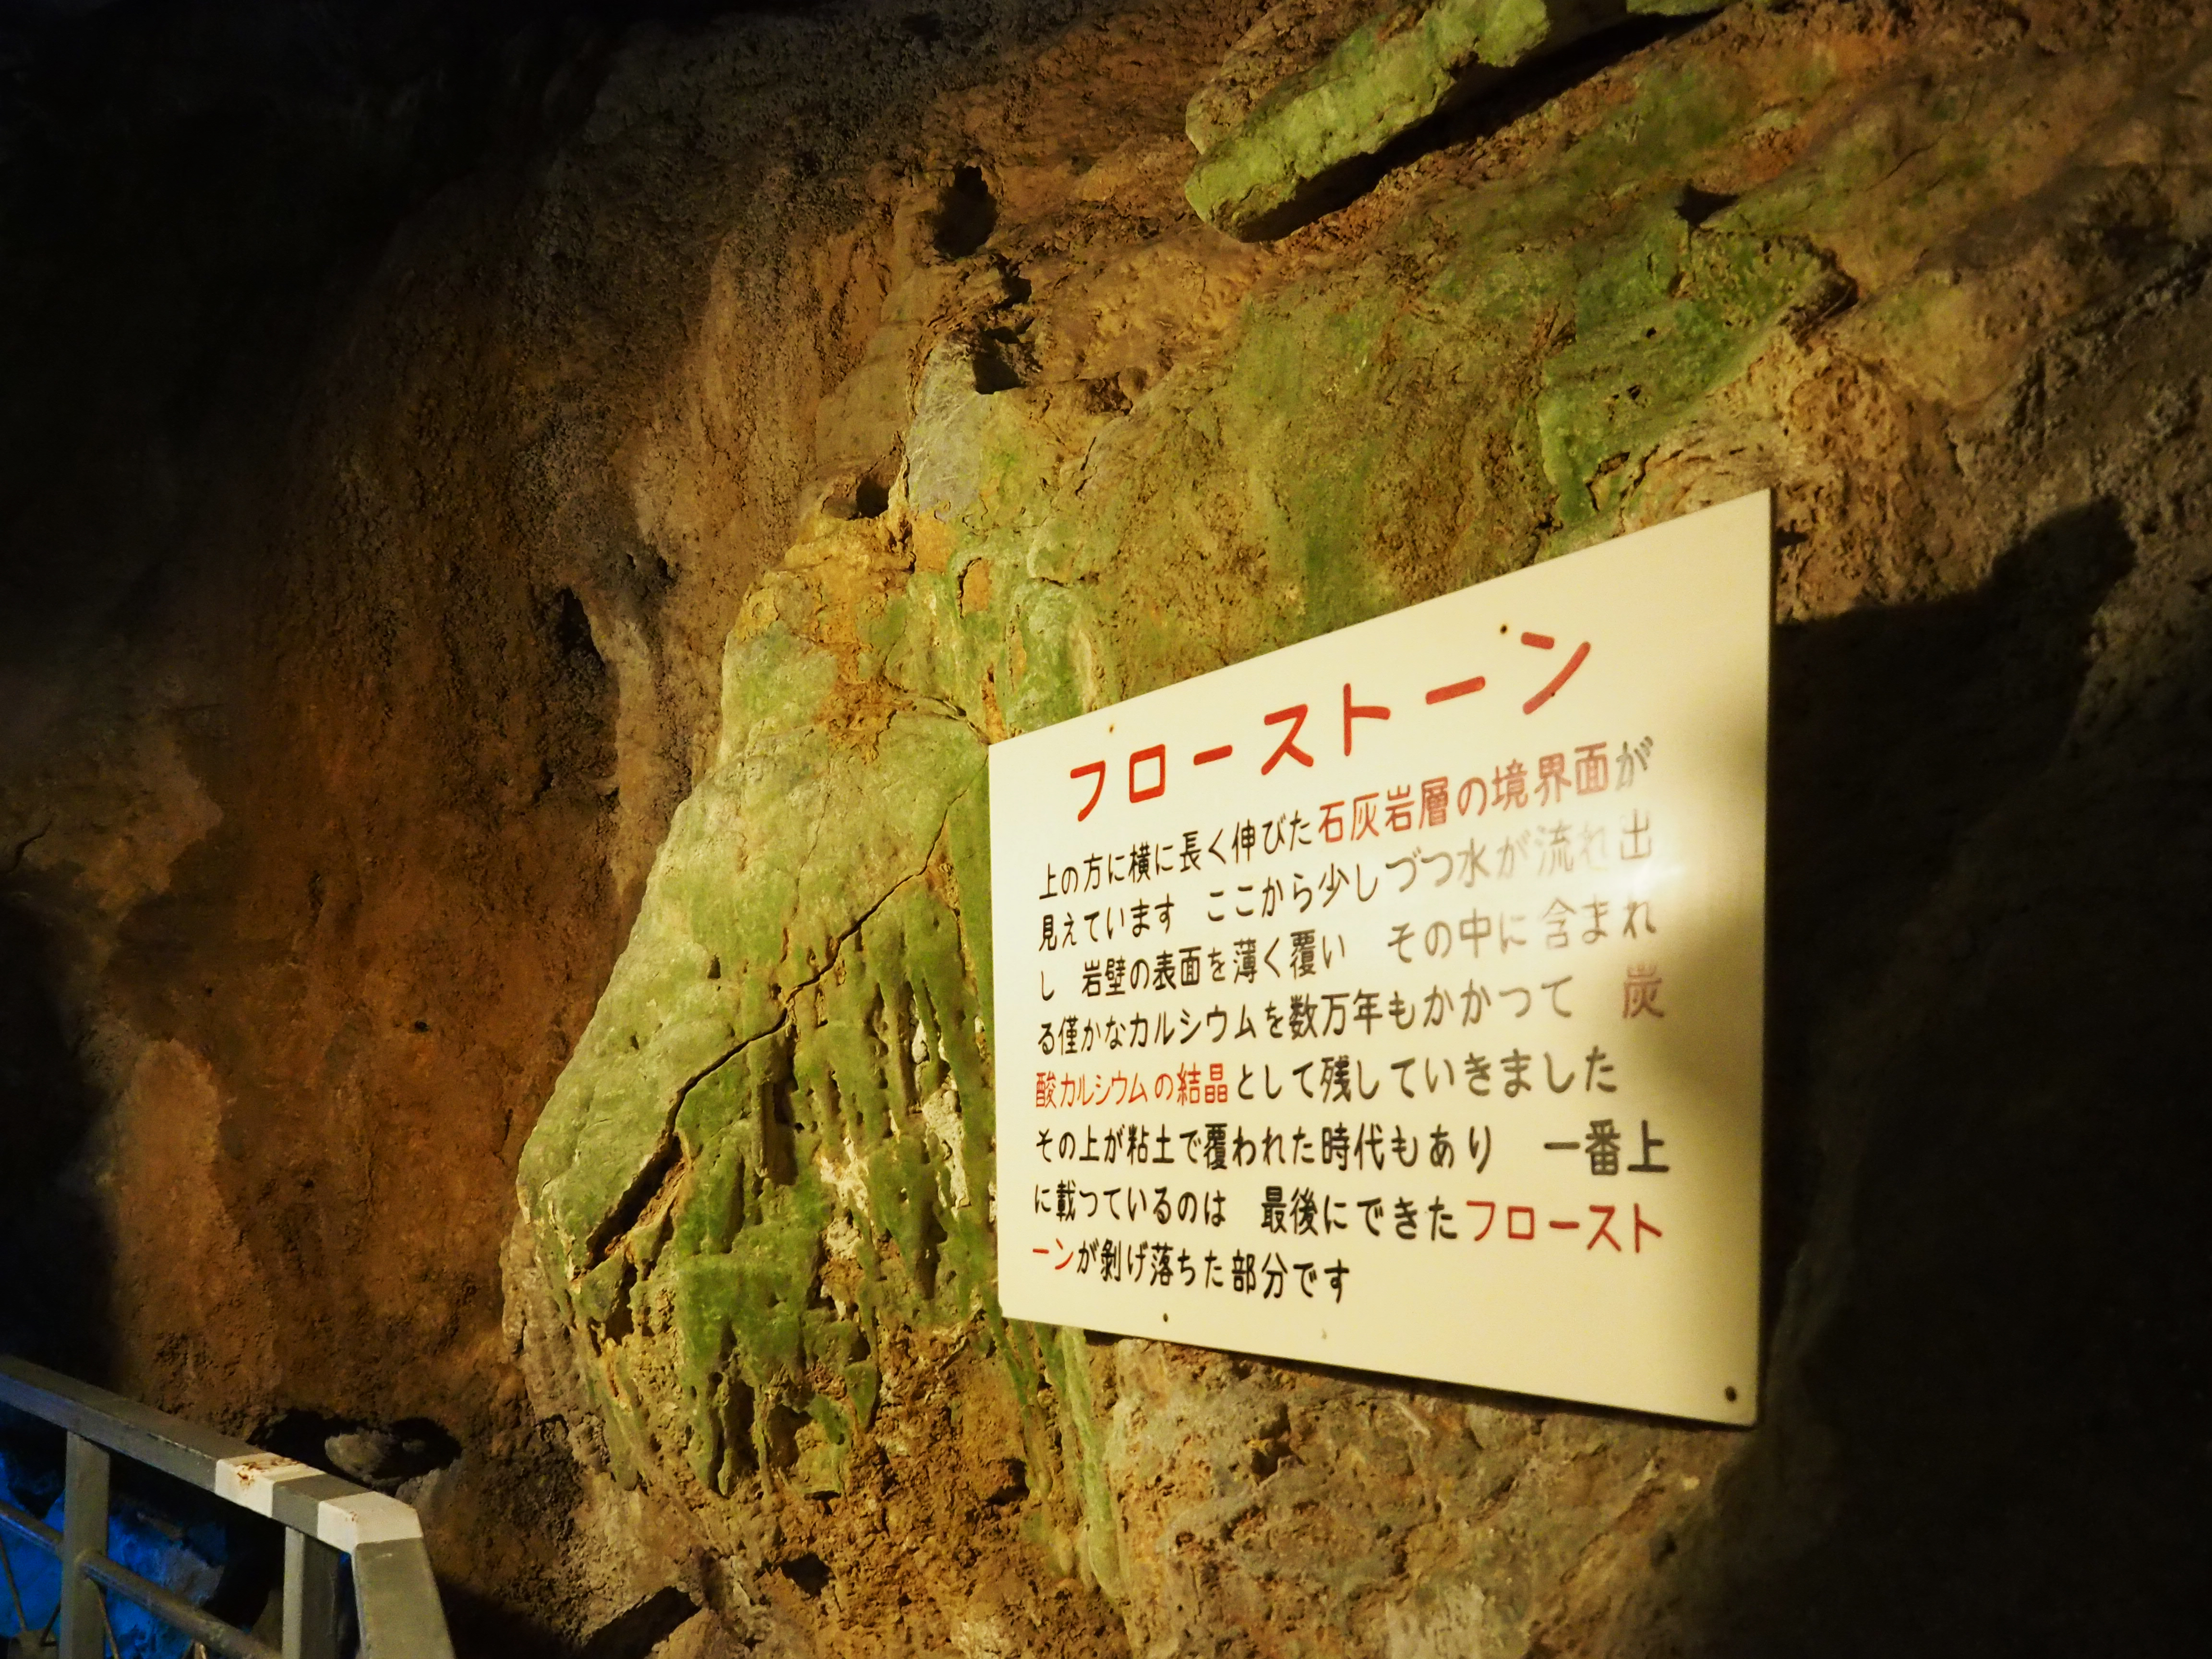 熊本 日本七大鐘乳洞之一 深入 球泉洞 探索驚奇地景 彥彥 日本沉潛中